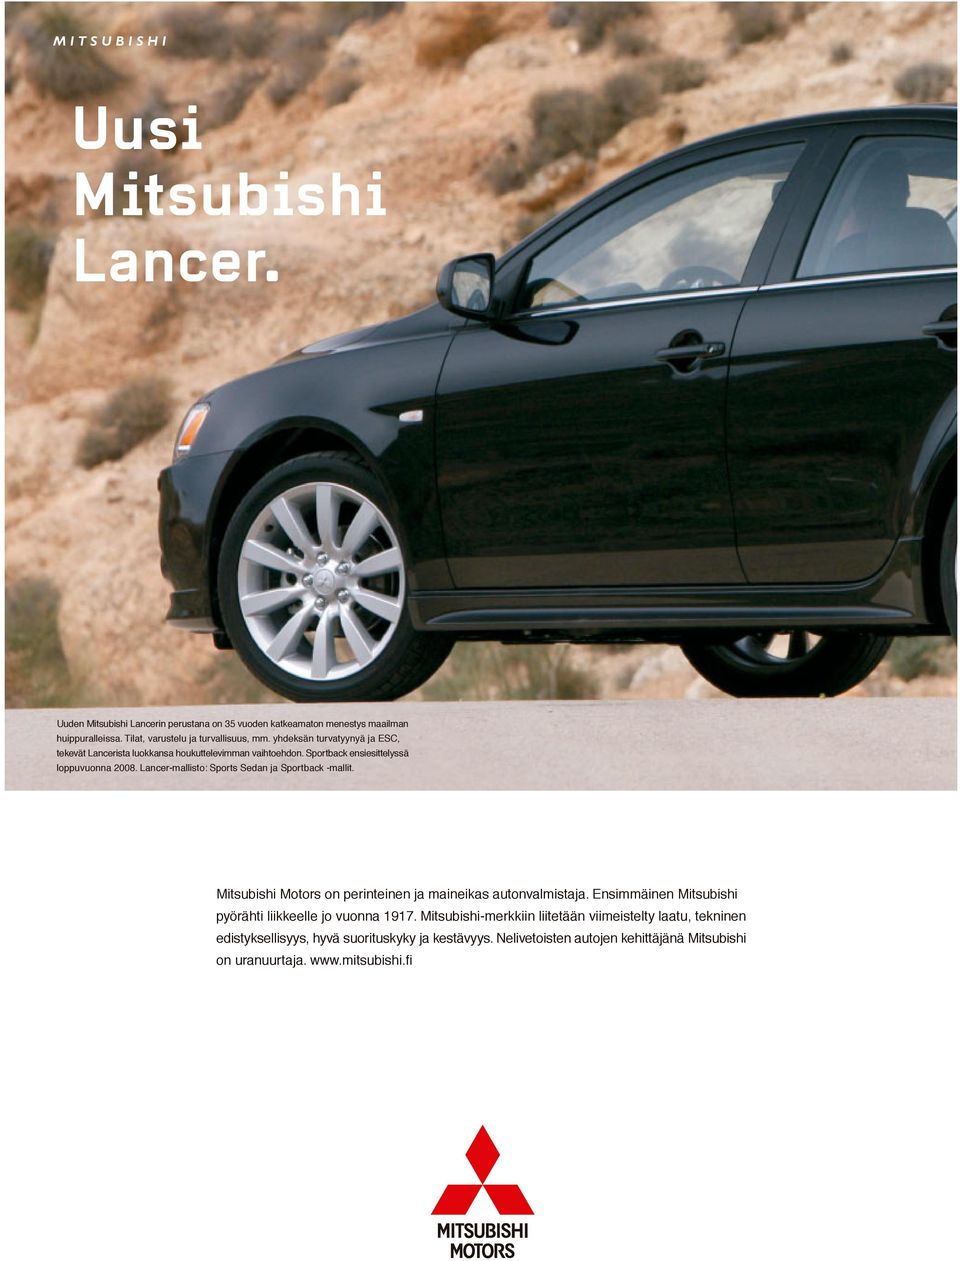 Sportback ensiesittelyssä loppuvuonna 2008. Lancer-mallisto: Sports Sedan ja Sportback -mallit. Mitsubishi Motors on perinteinen ja maineikas autonvalmistaja.